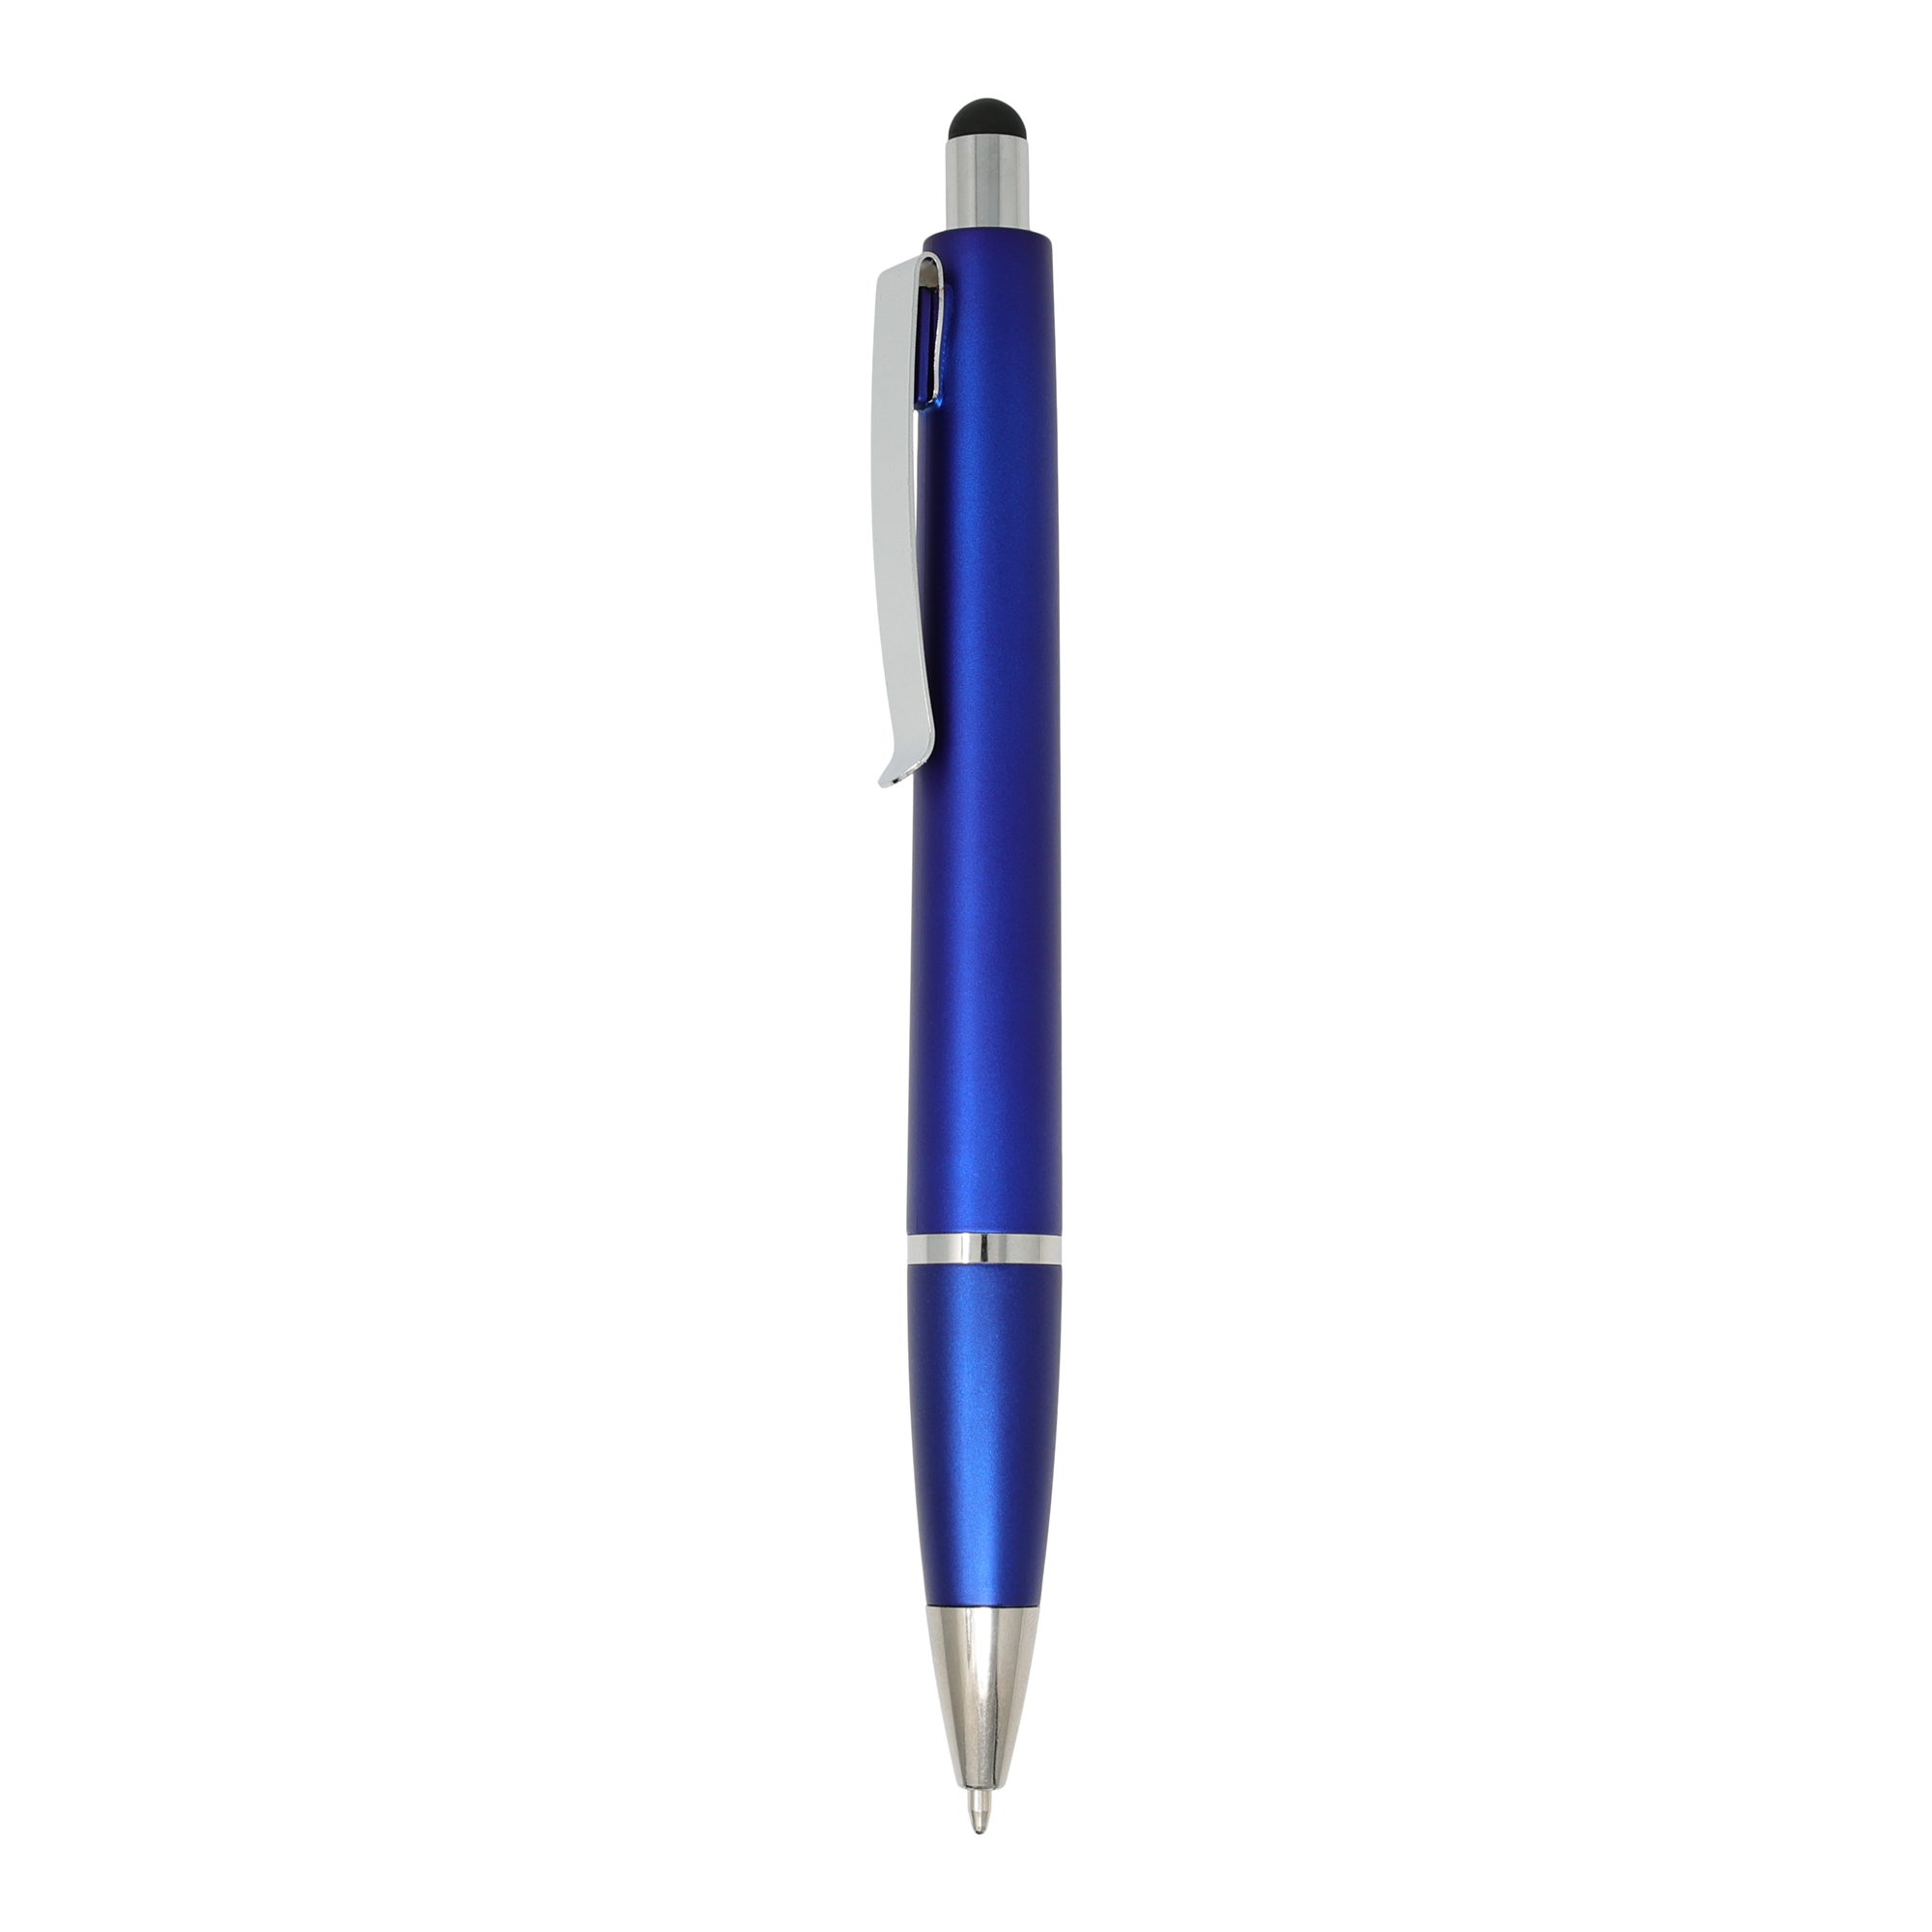 Bolígrafo con luz y puntero Styled
Color azul y plateado